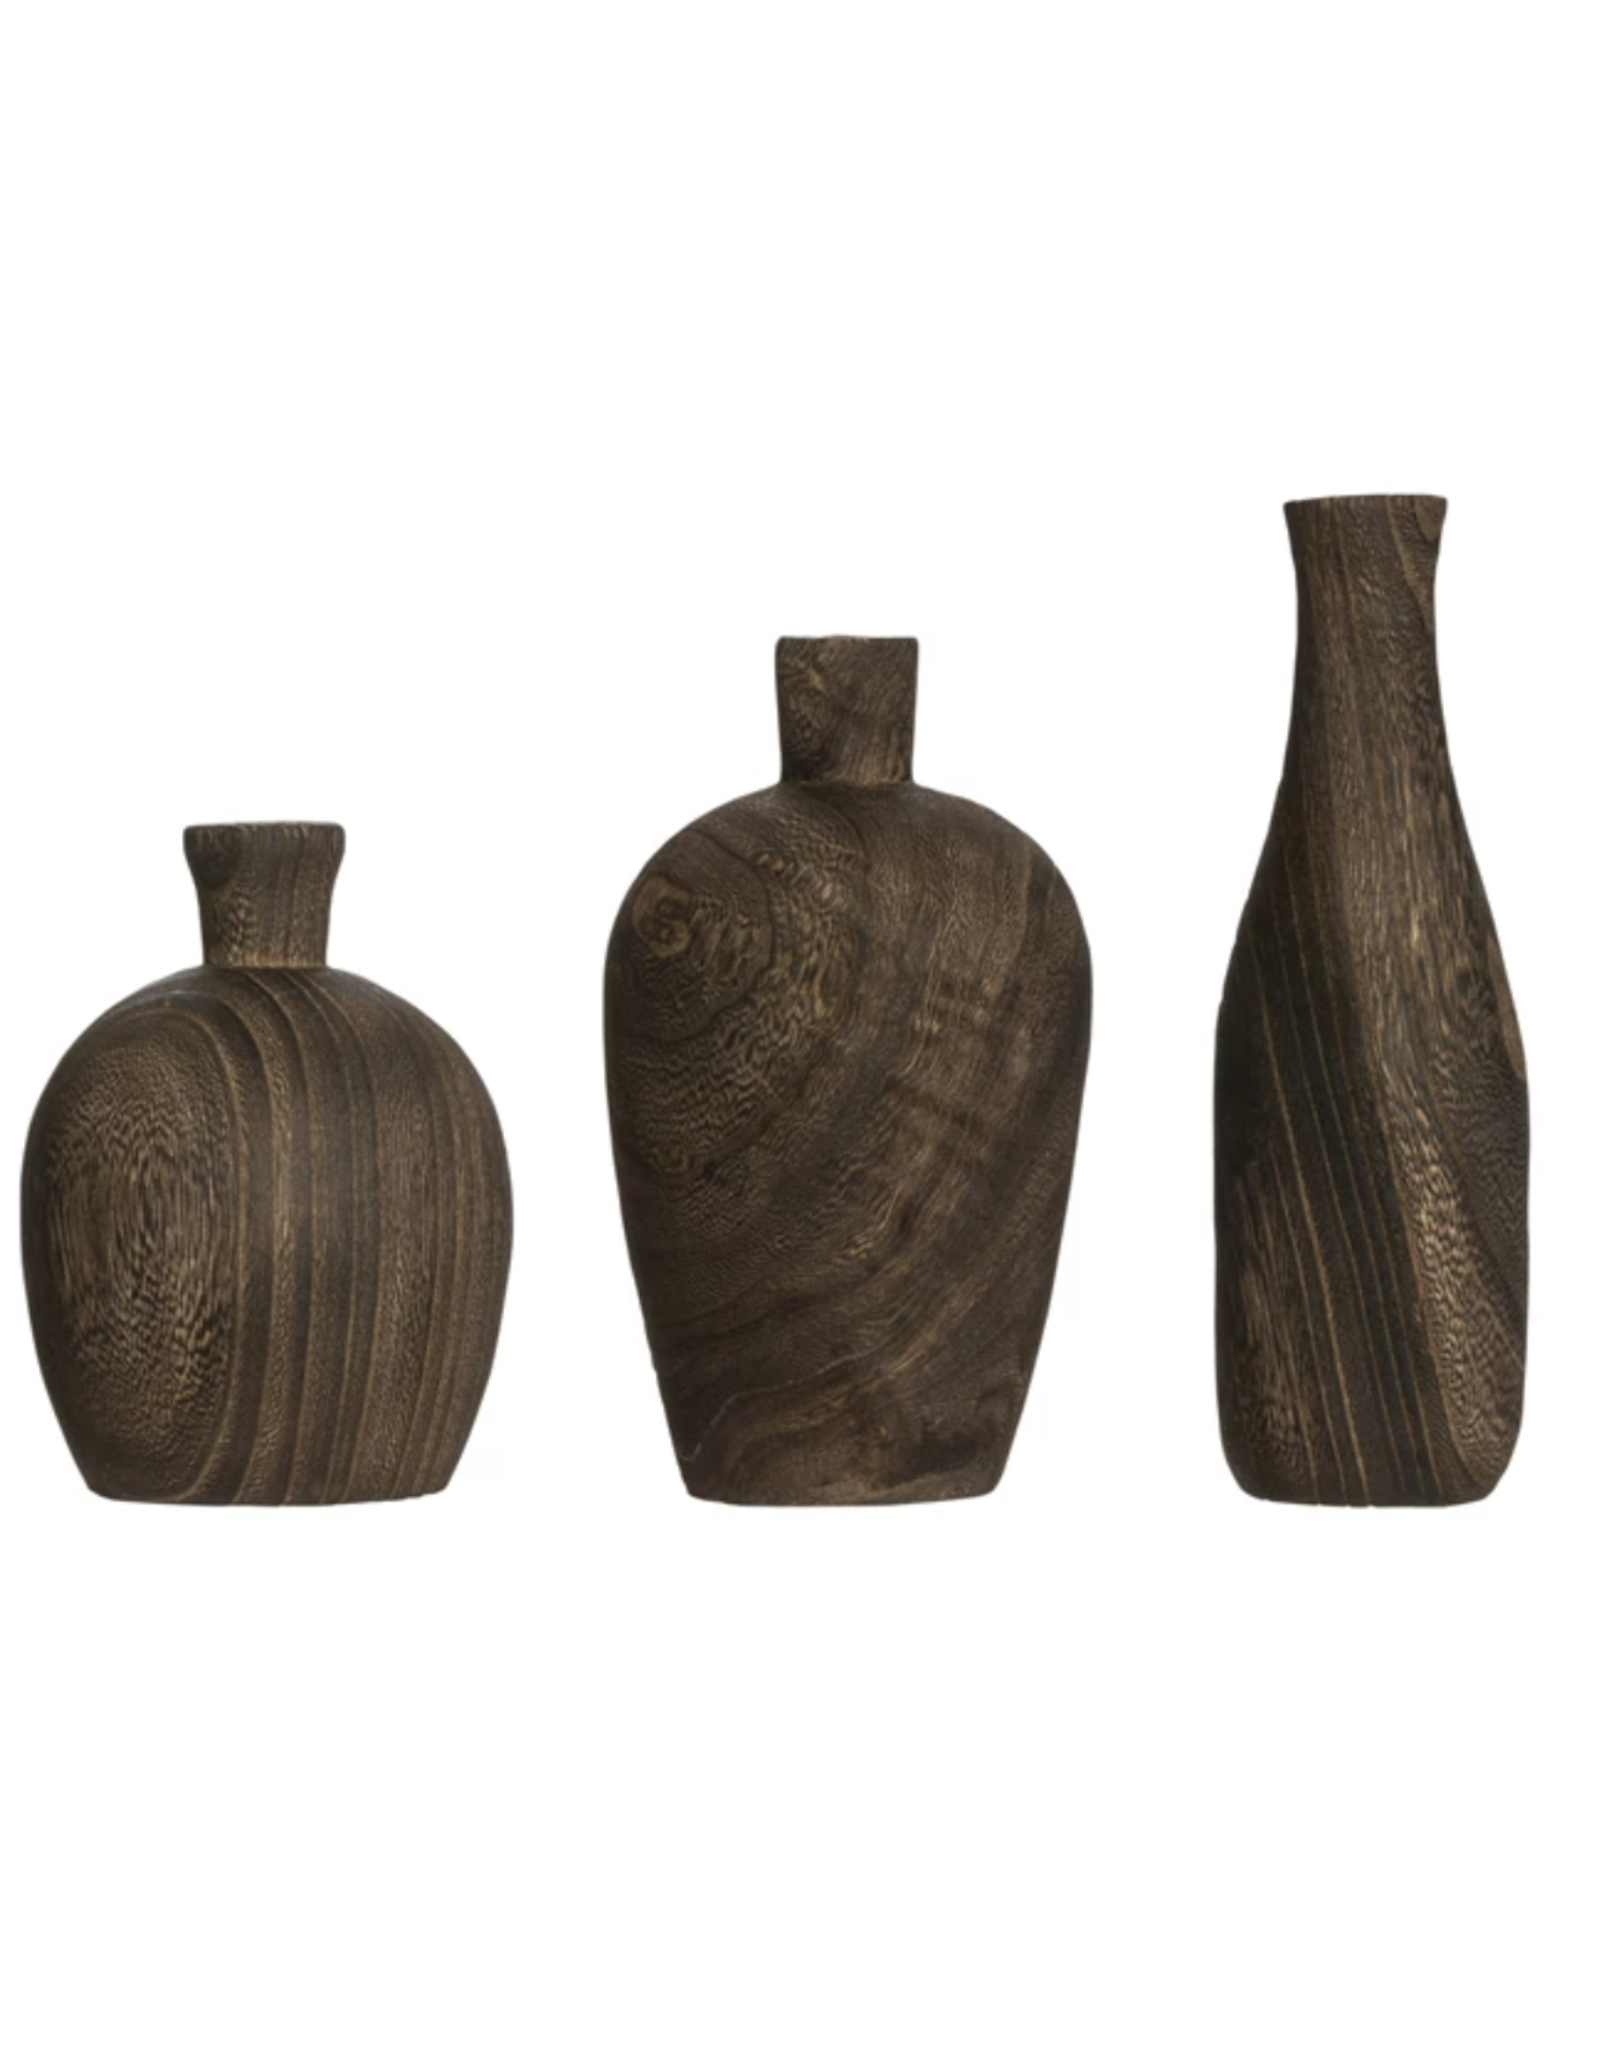 Decorative Wood Vase, Medium